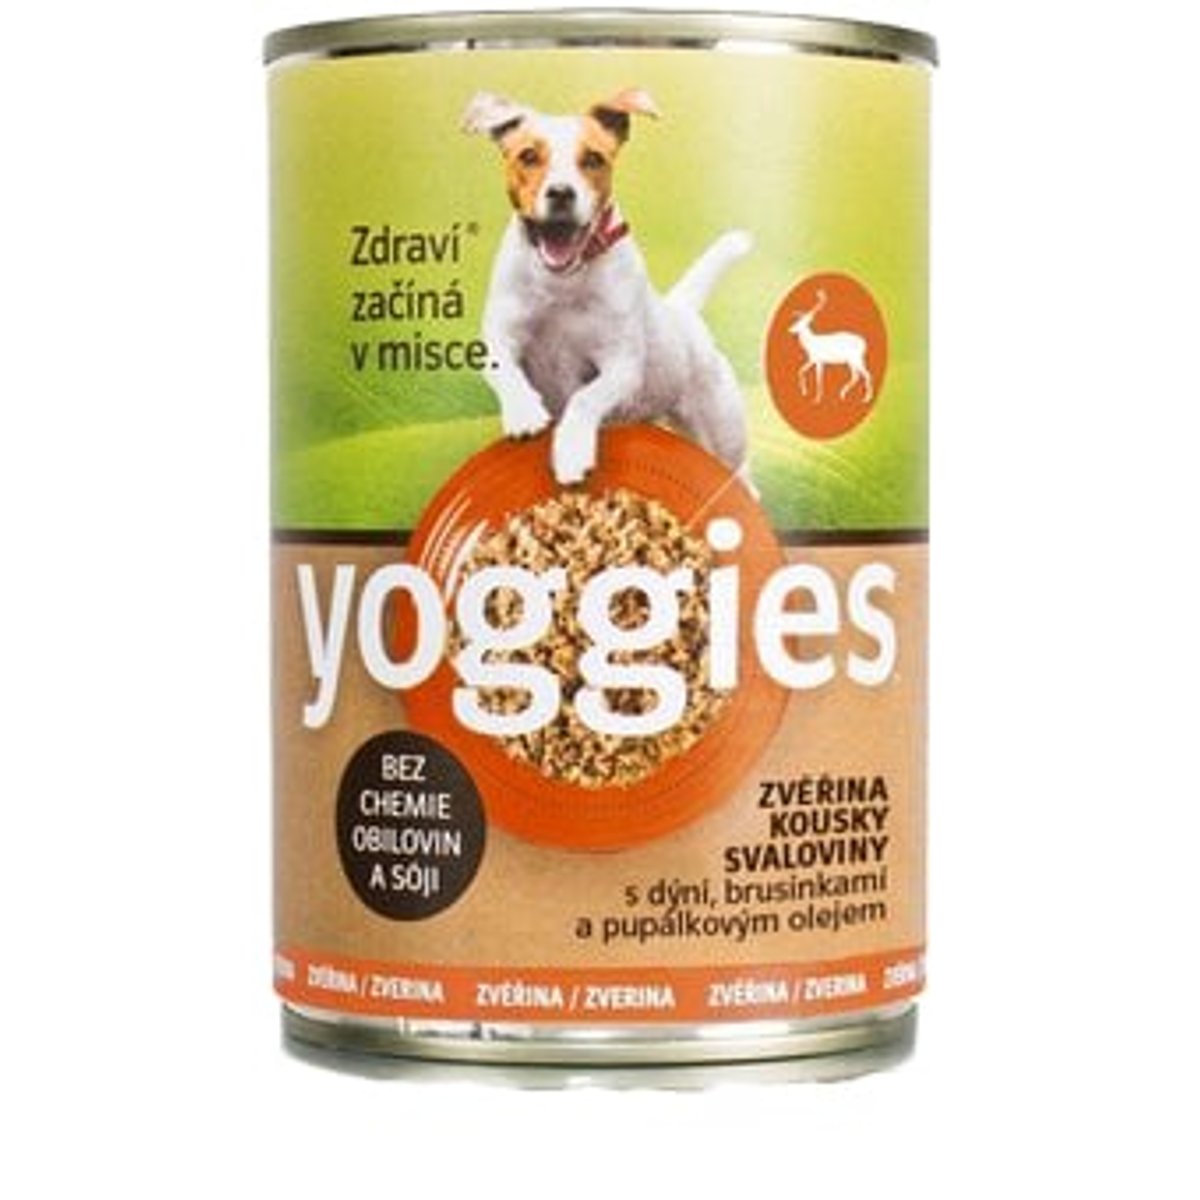 Yoggies Zvěřinová konzerva pro psy s dýní a pupálkovým olejem